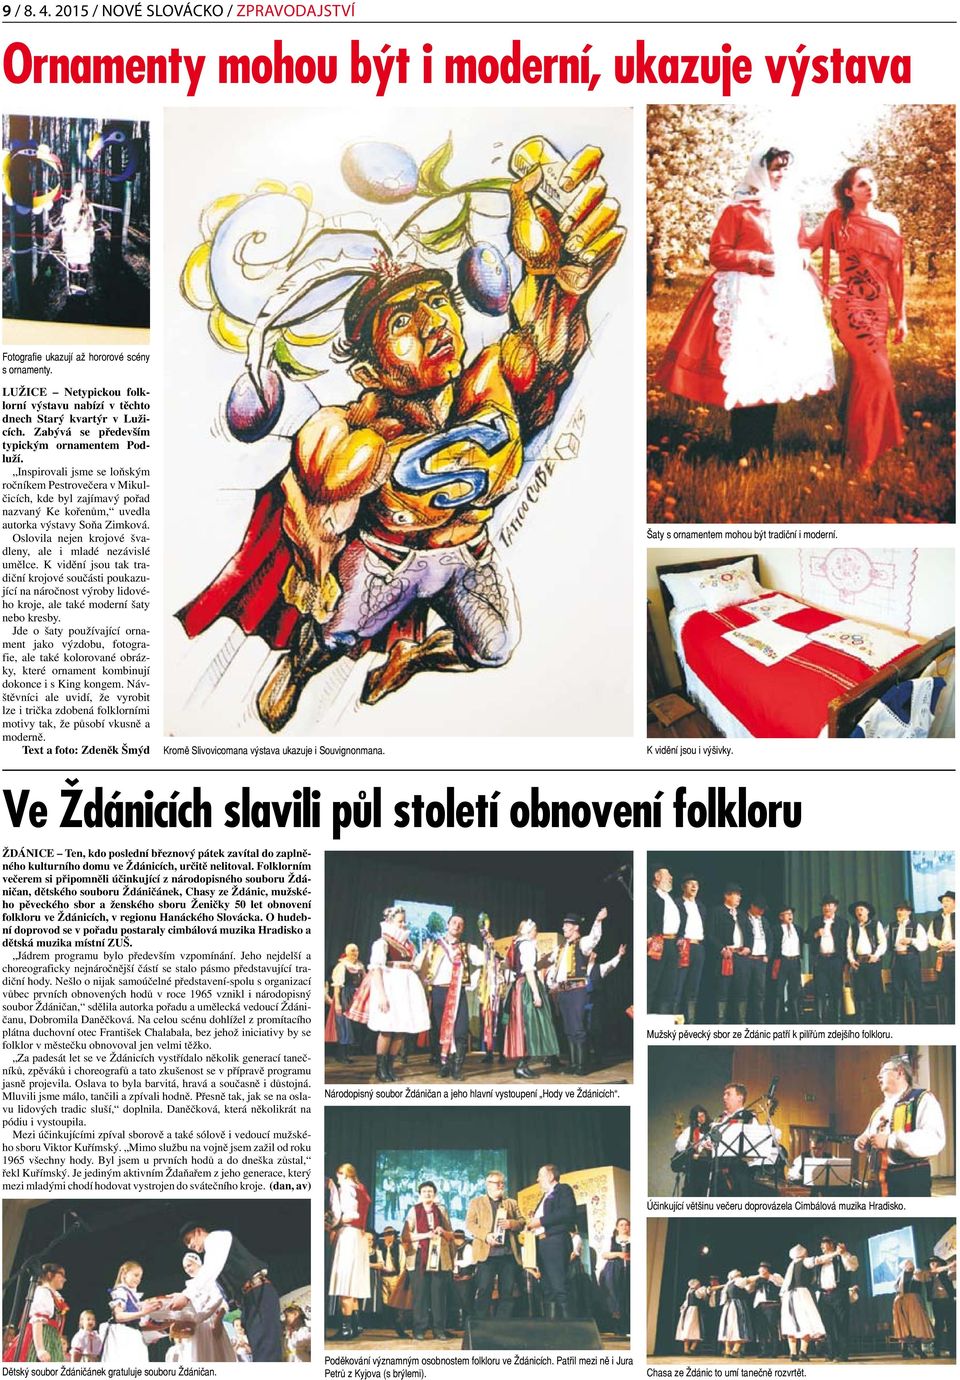 Inspirovali jsme se loňským ročníkem Pestrovečera v Mikulčicích, kde byl zajímavý pořad nazvaný Ke kořenům, uvedla autorka výstavy Soňa Zimková.